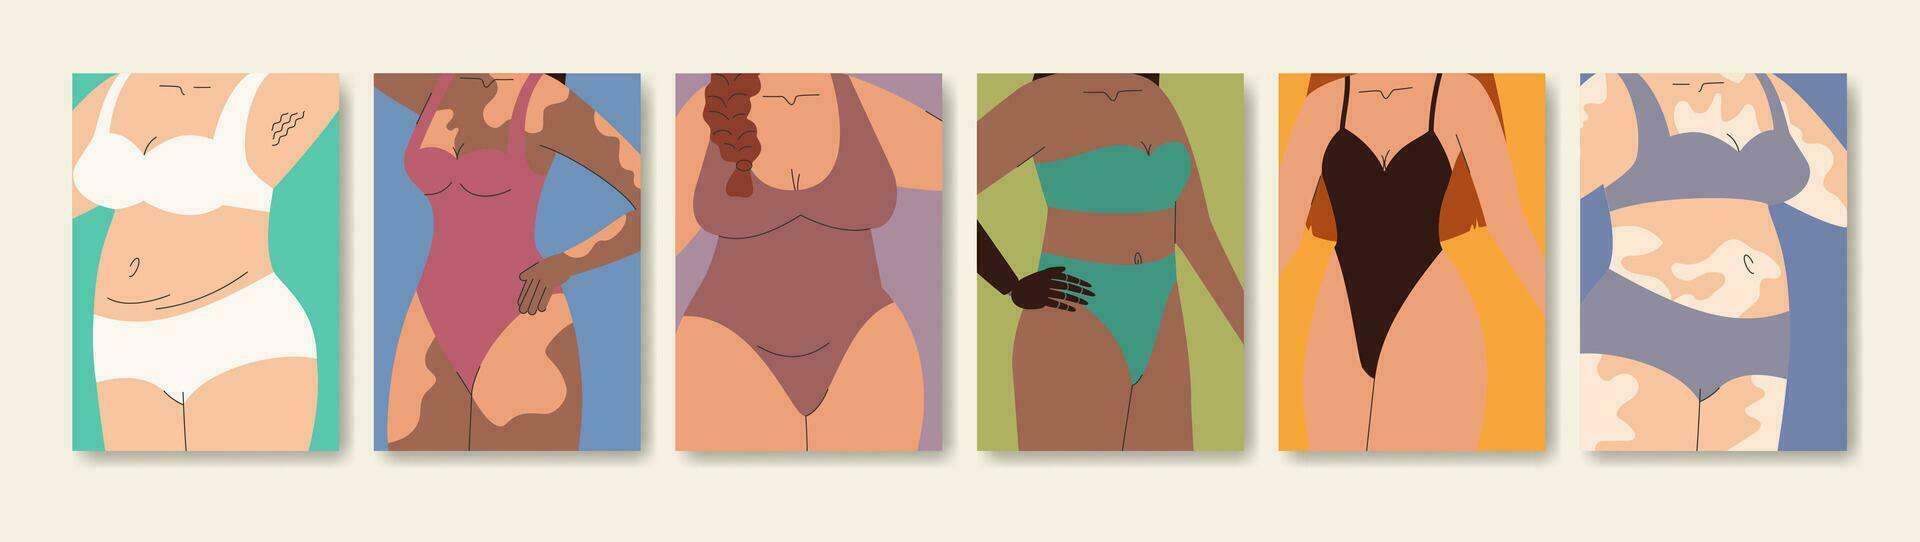 multiracial femmes de différent figure type permanent ensemble affiche illustration vecteur